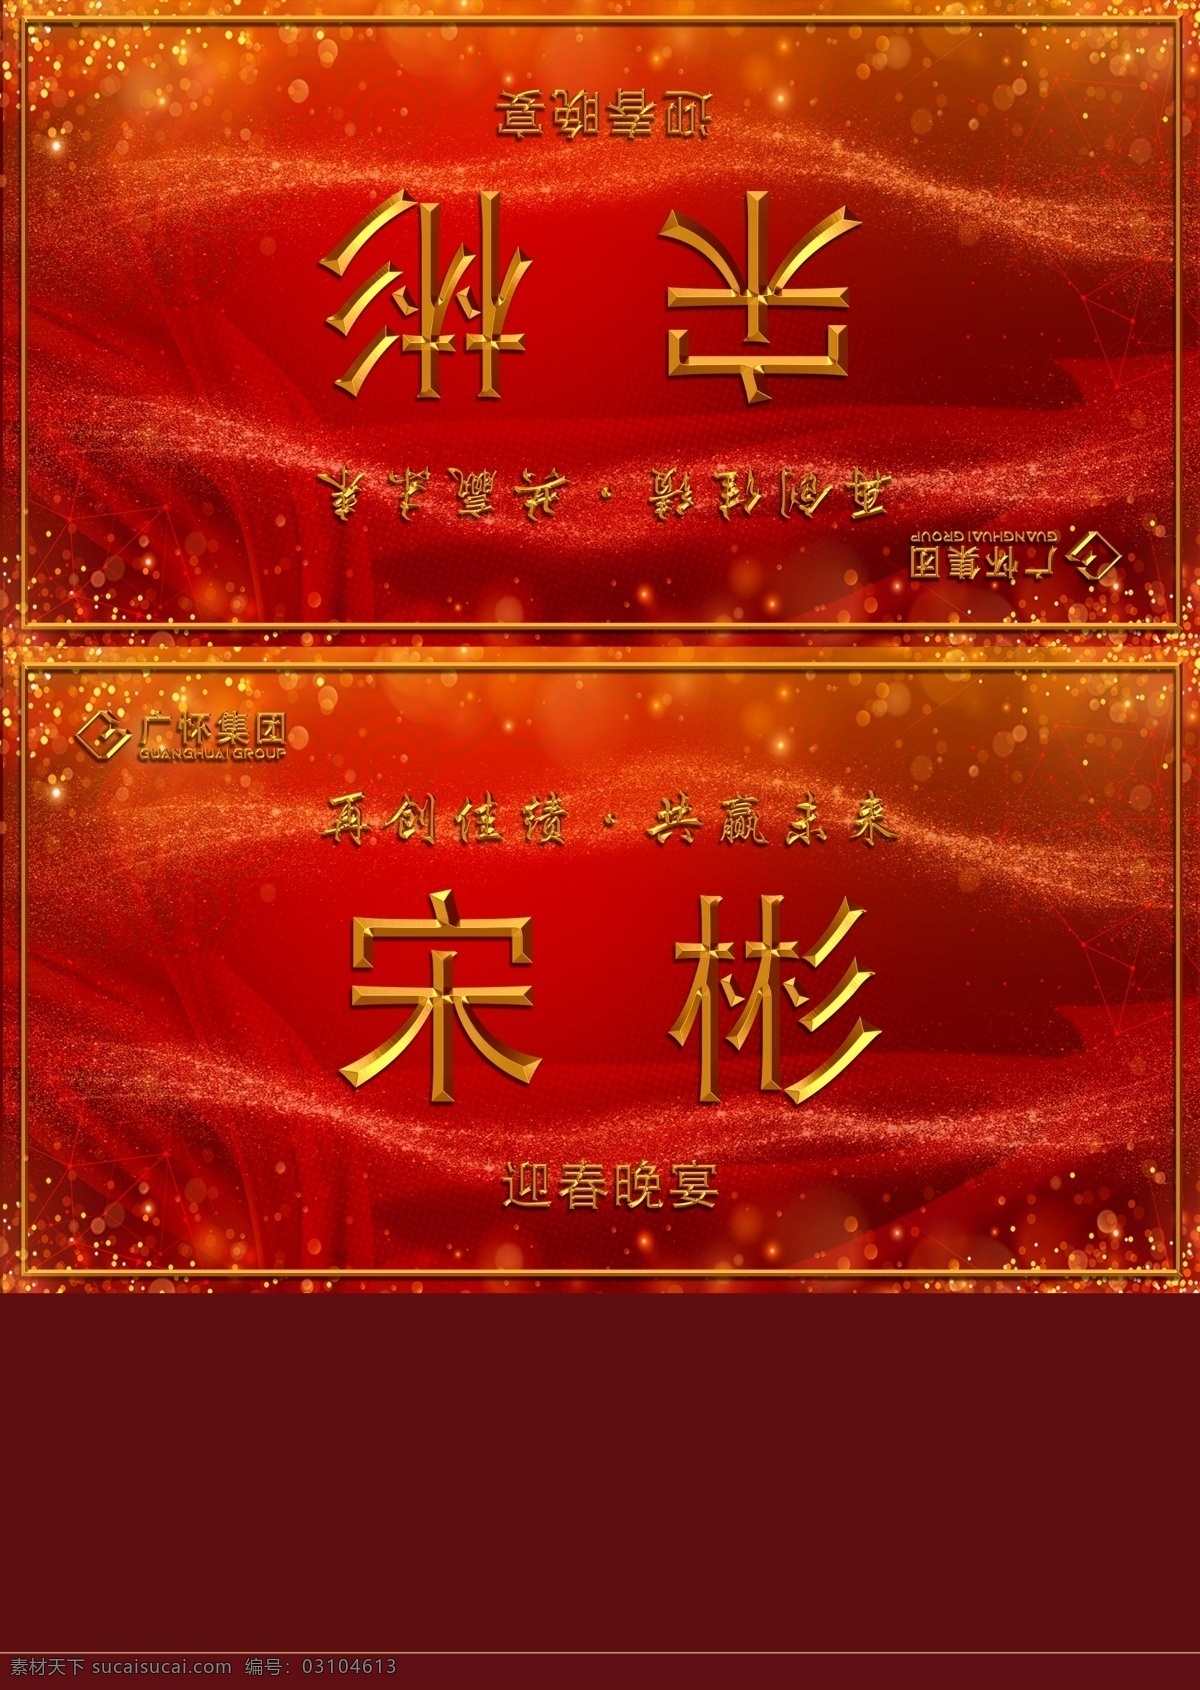 年会桌卡 台卡 名字牌 红色 喜庆 晚会背景 企业团拜会 新年快乐 节假日